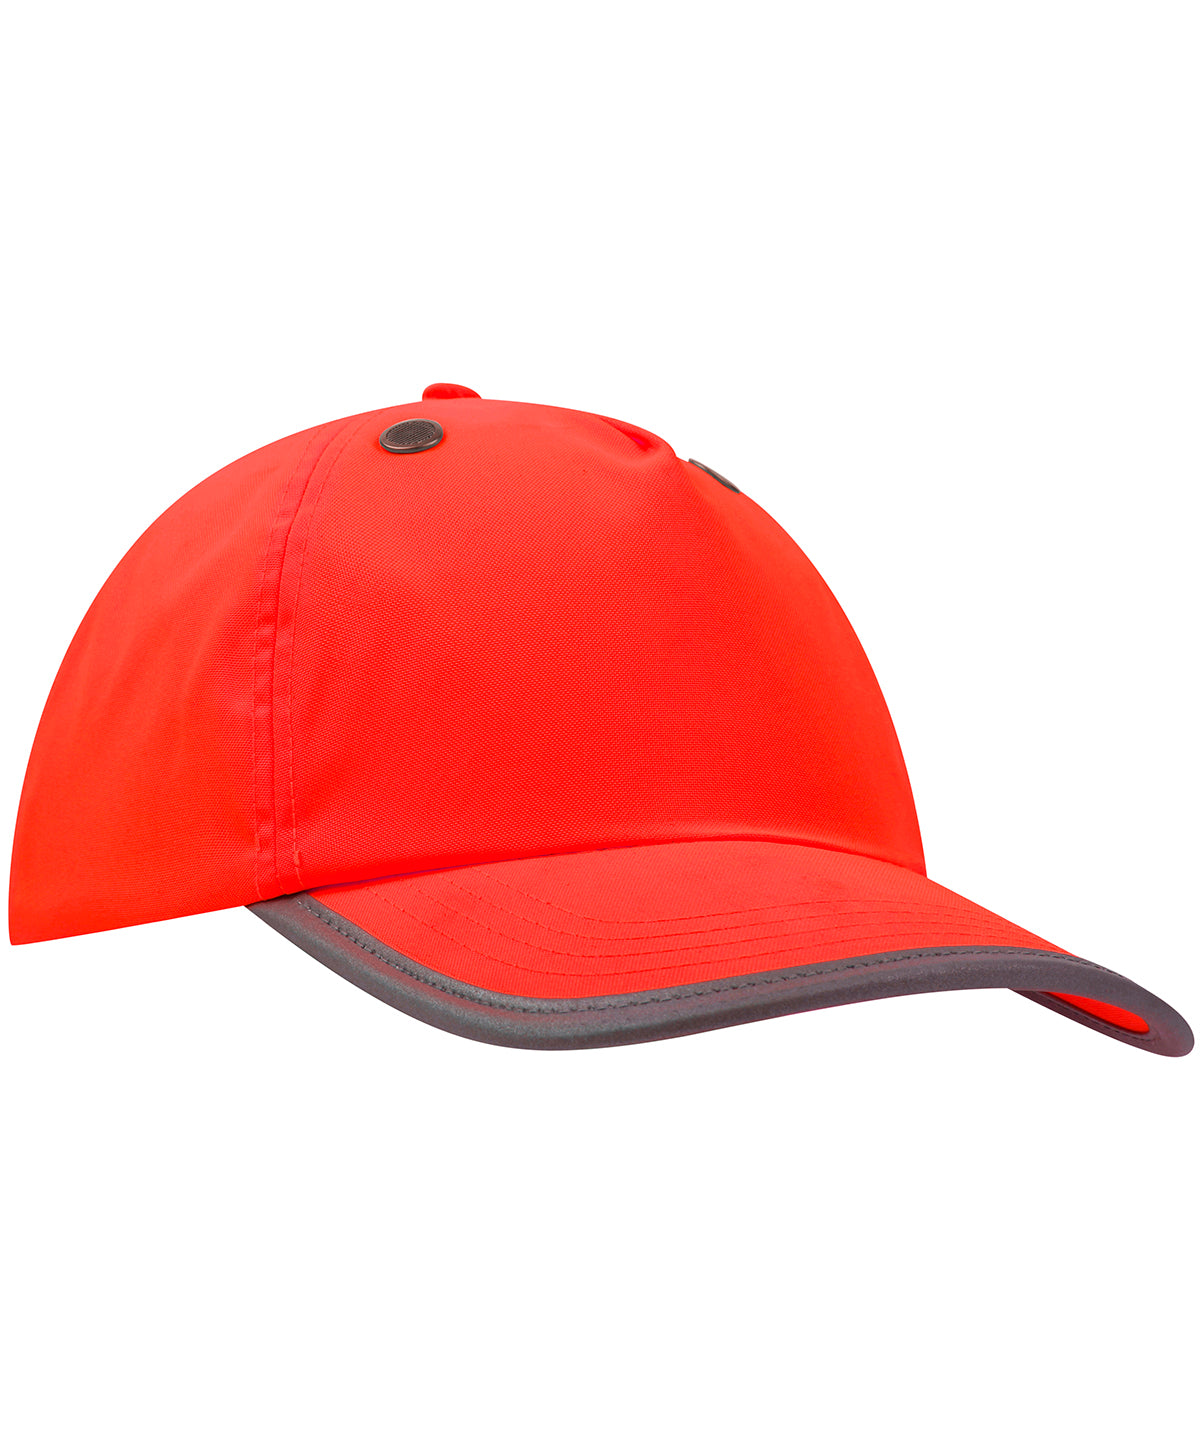 Húfur - Safety Bump Cap (TFC100)